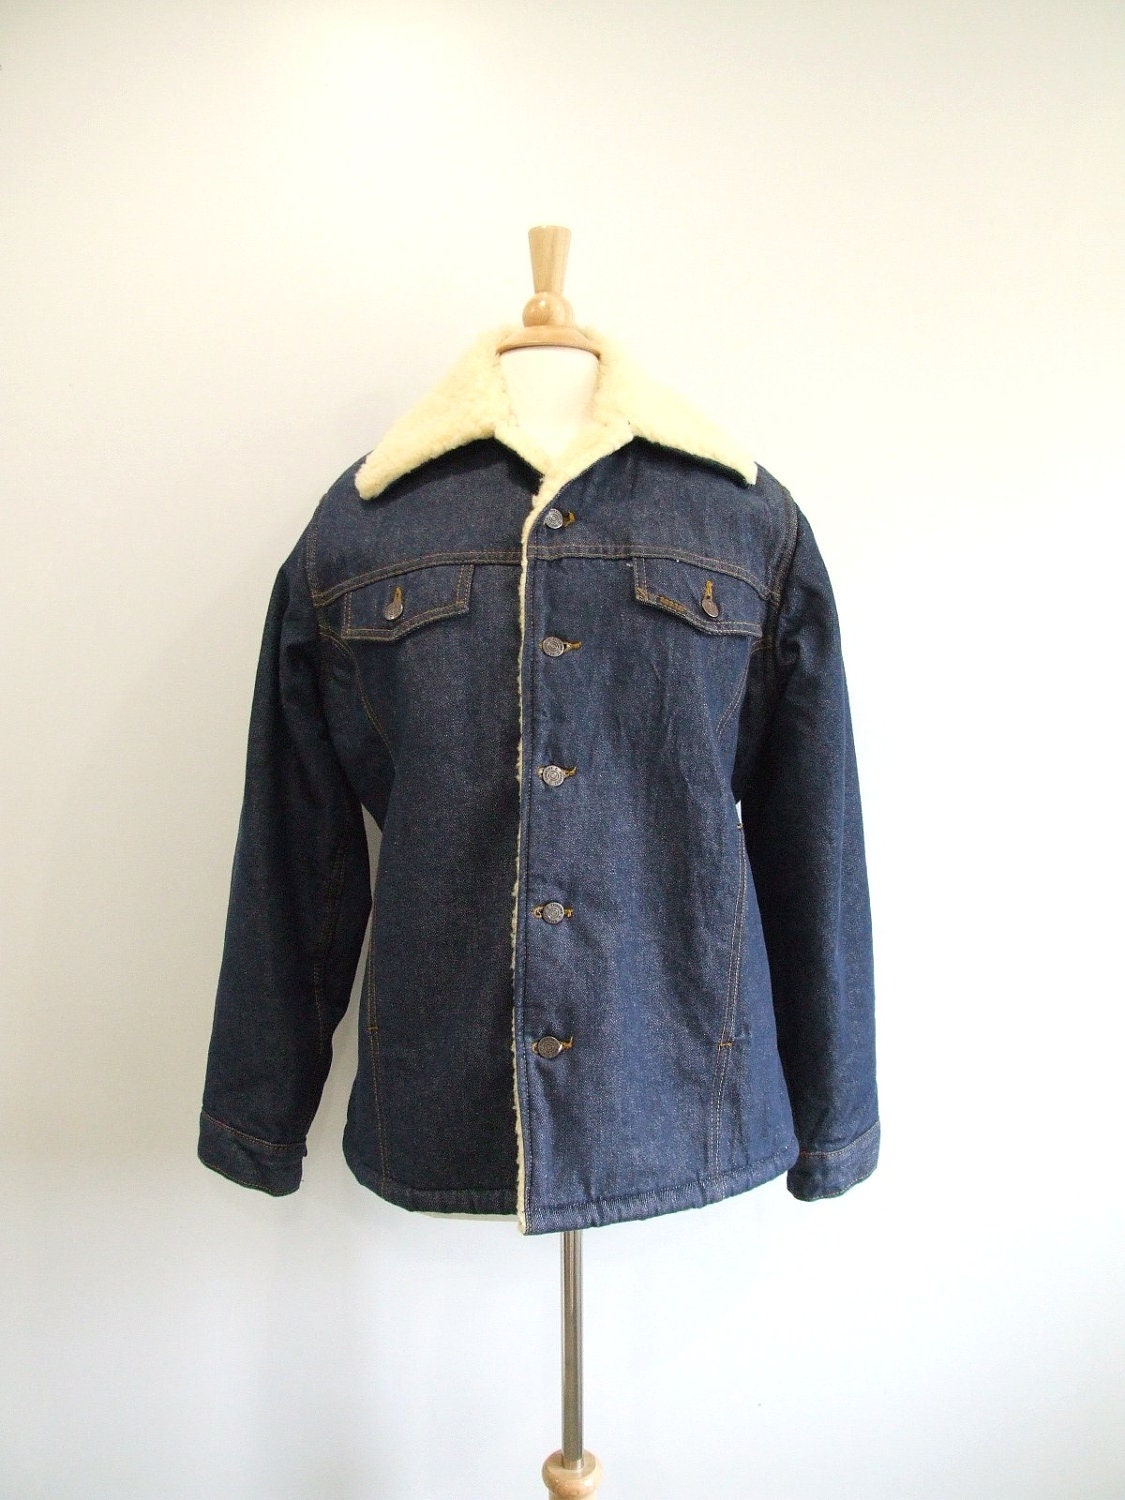 Mens Denim Jacket Vintage 70s Blue Jean Coat by RedsThreadsVintage